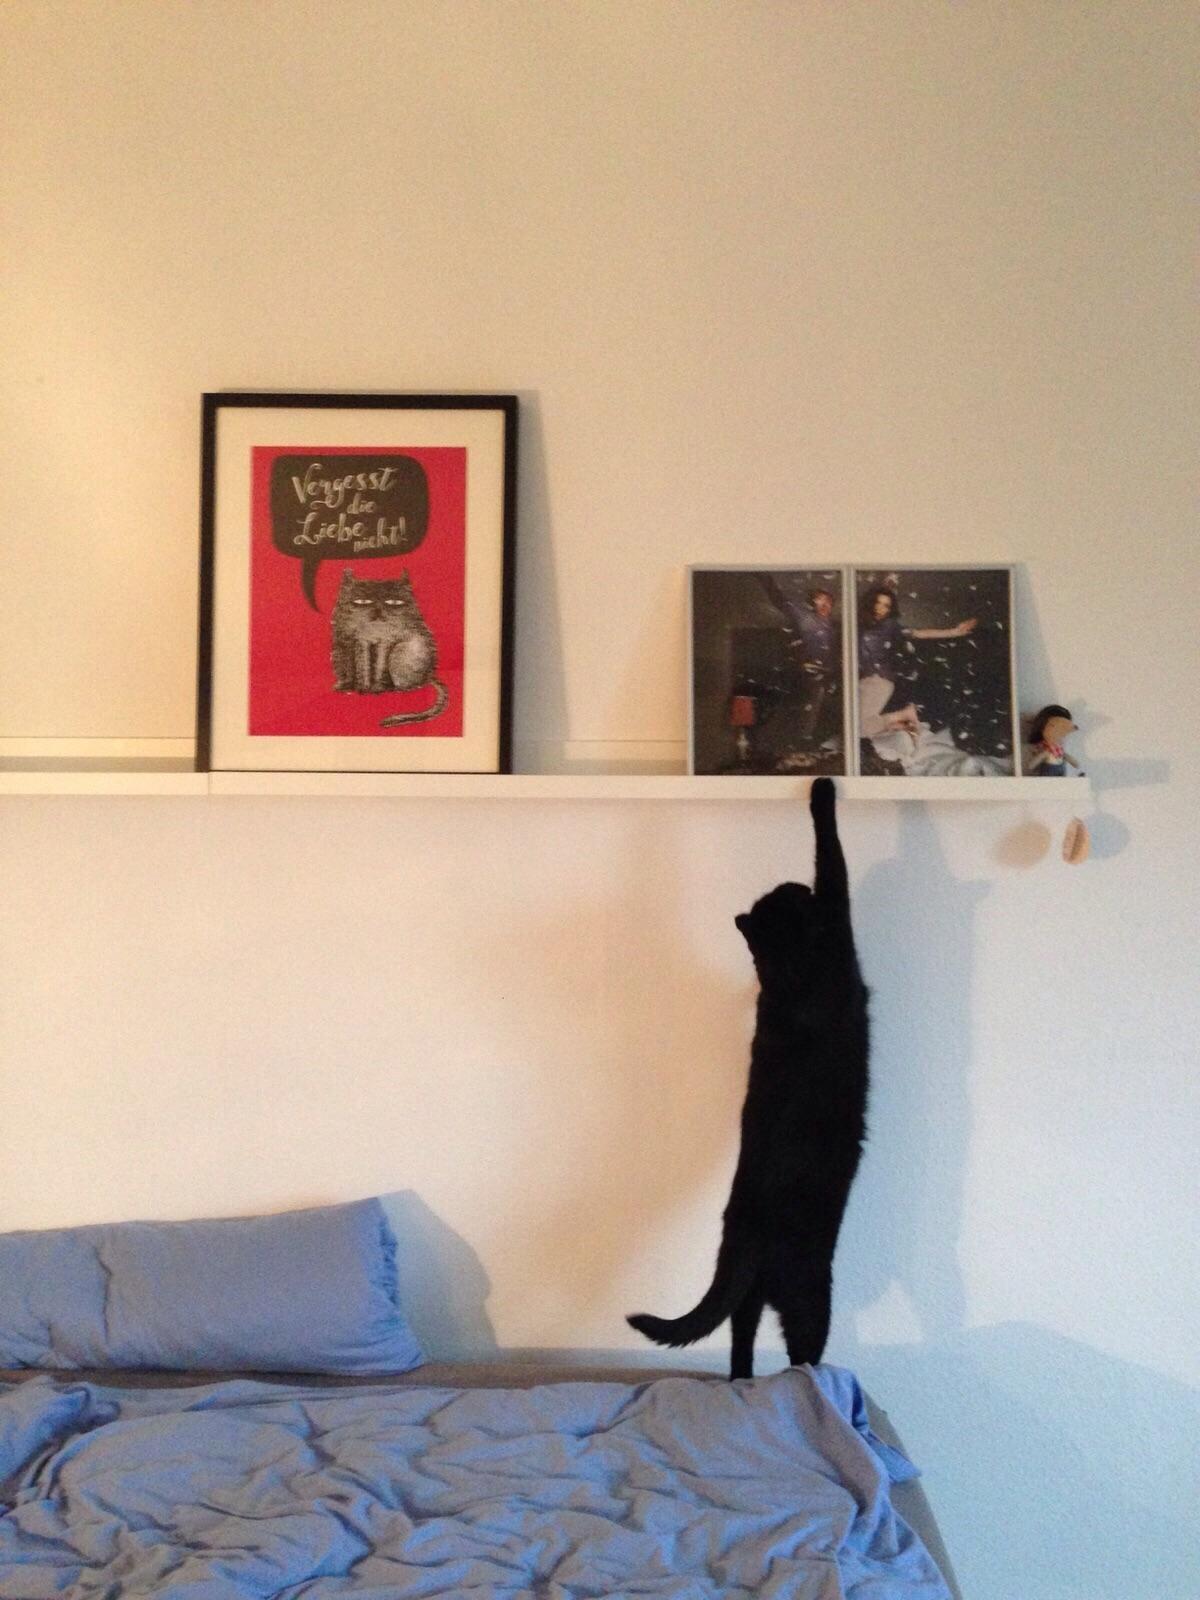 Meow! Ich will da hoch ❤️🐱

#Schlafzimmer #Bilderleiste #cat